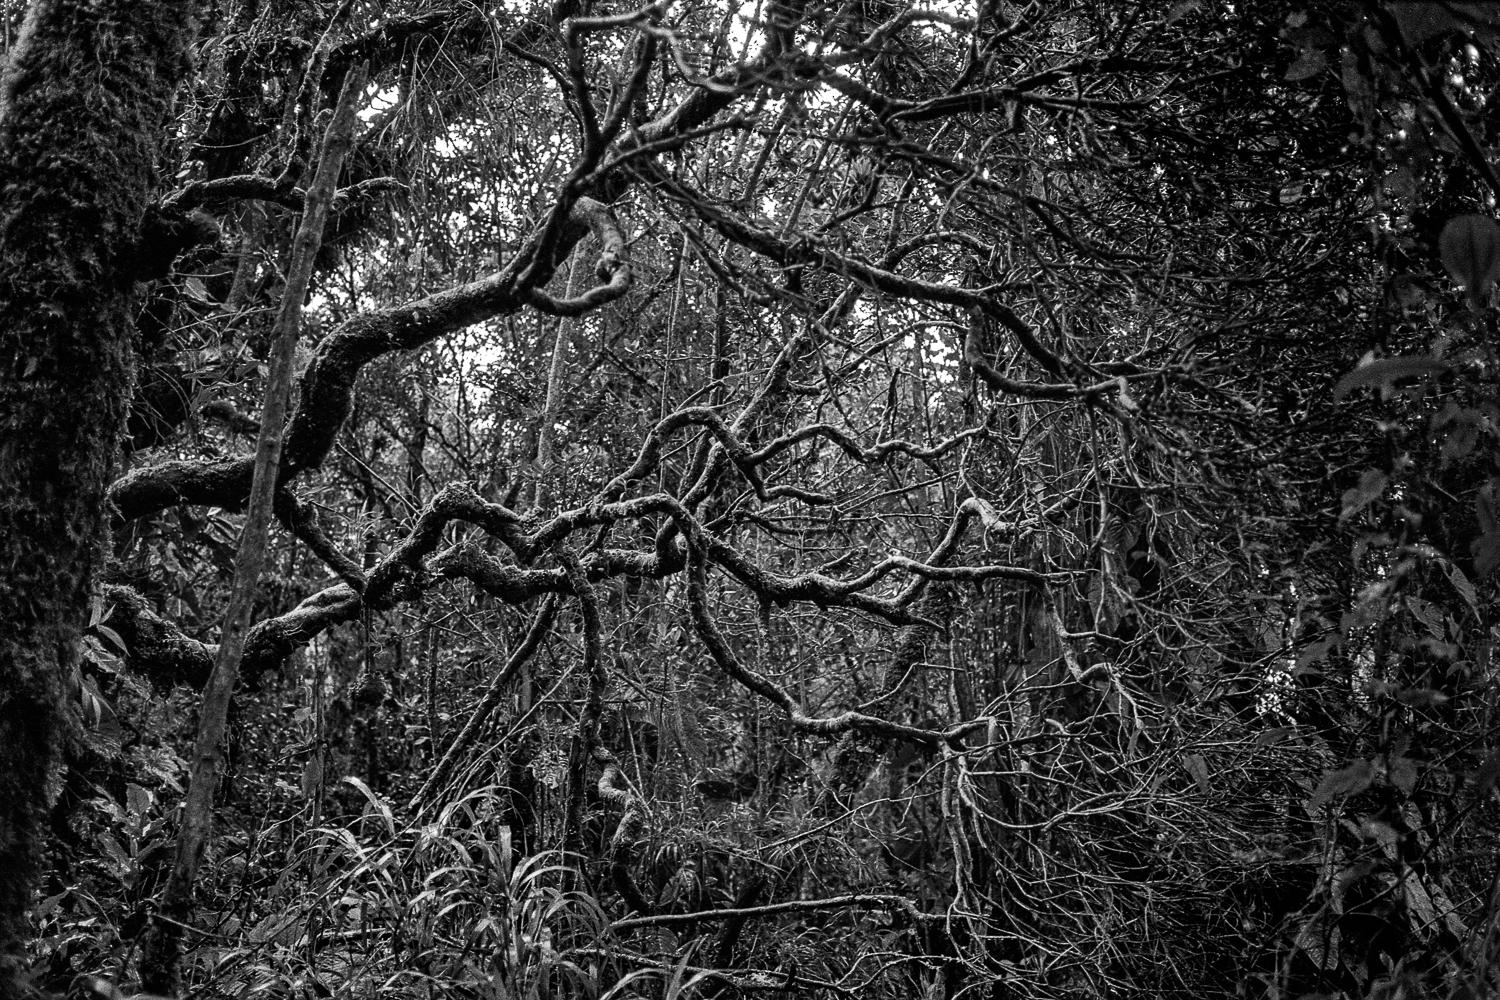 Miguel Winograd  Black and White Photograph - Selva Oscura Macizo Colombiano, Silver Gelatin Print